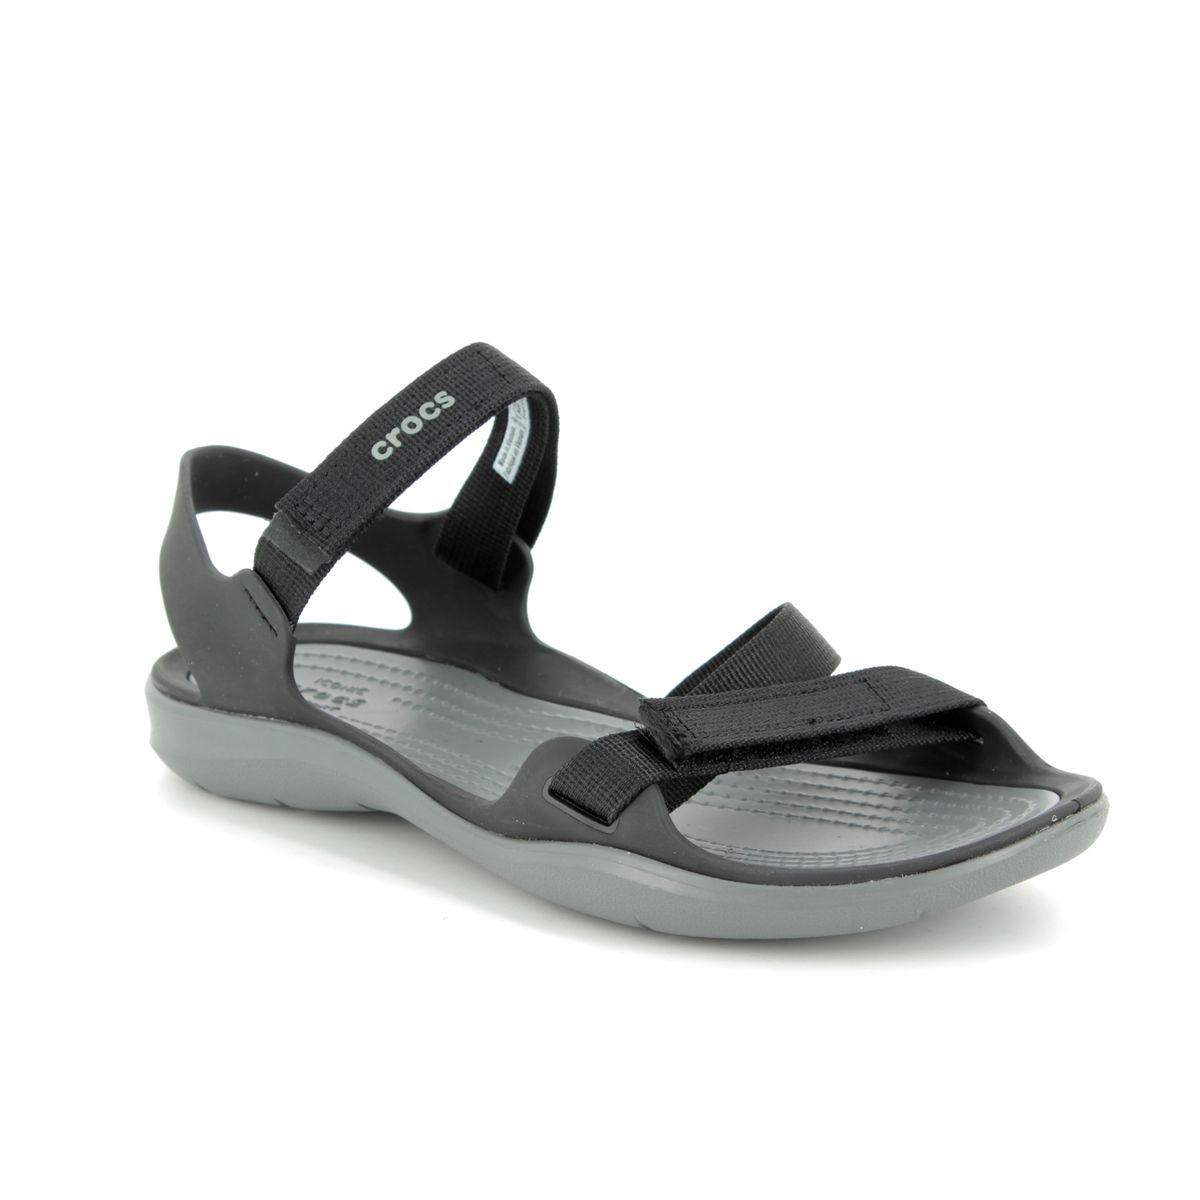 crocs black sandals